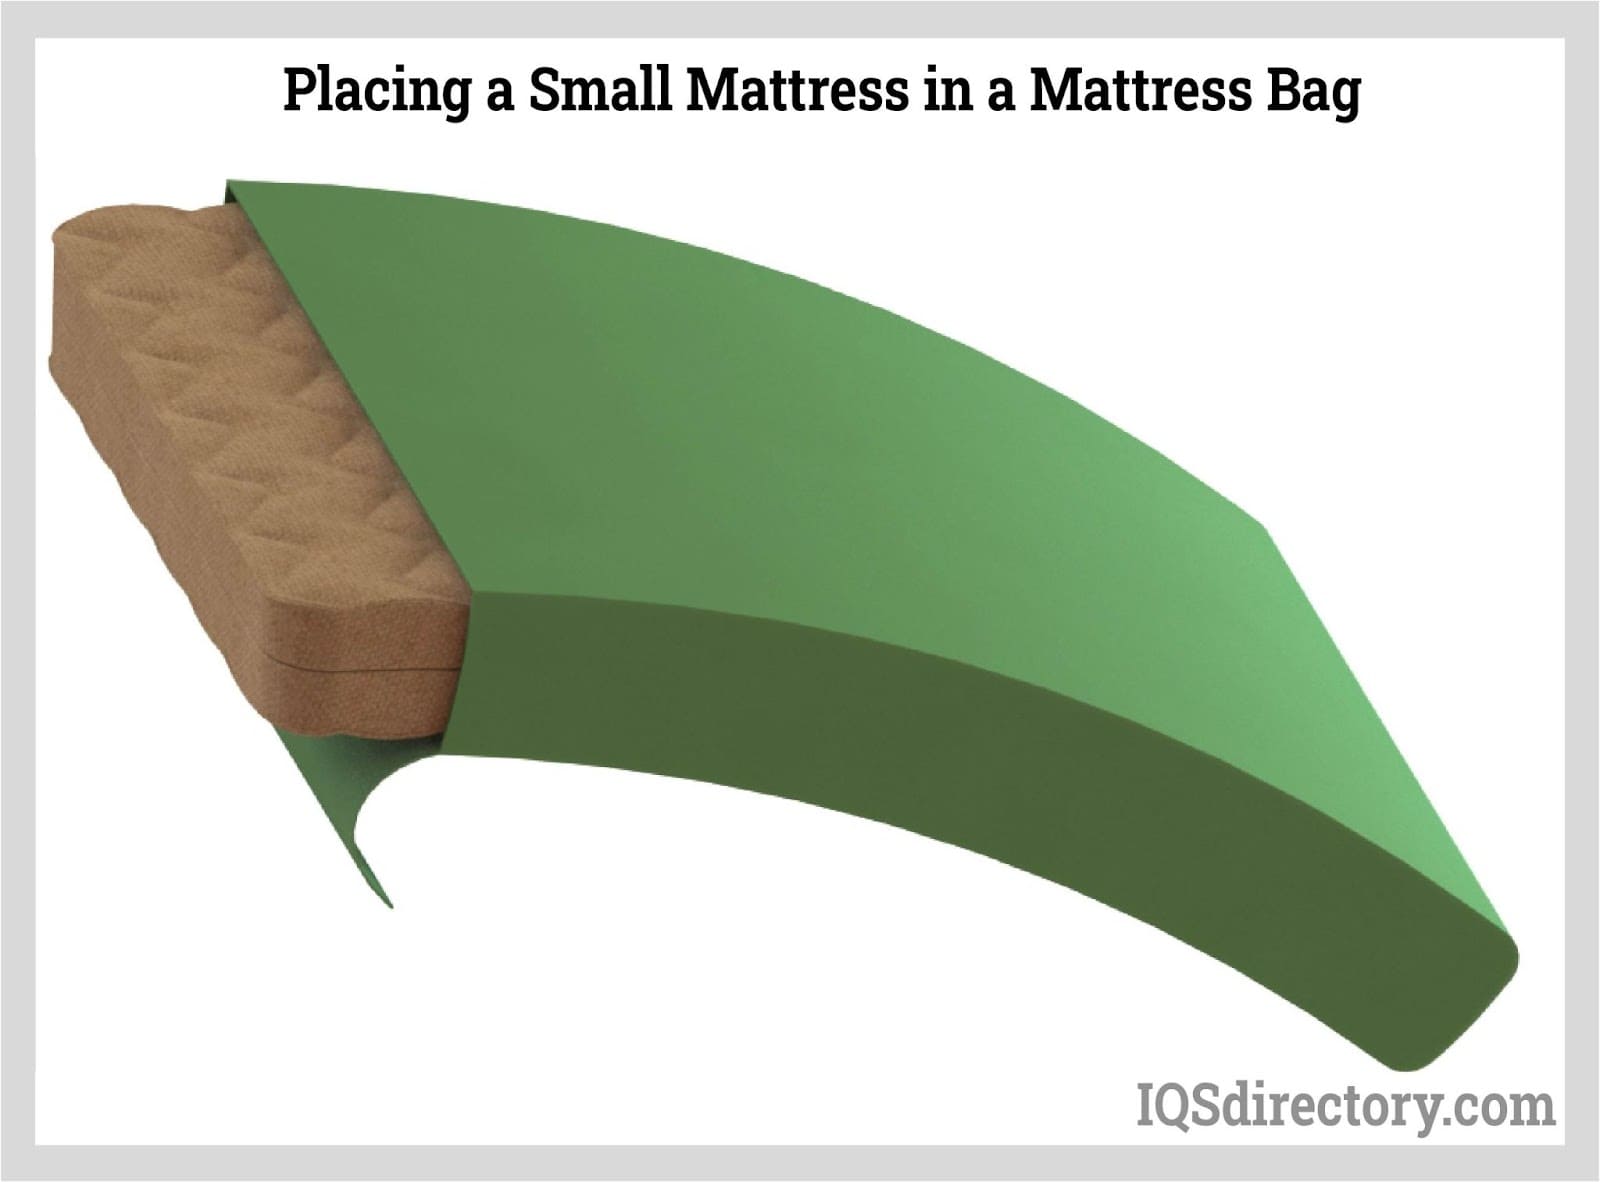 Placing a Small Mattress in a Mattress Bag